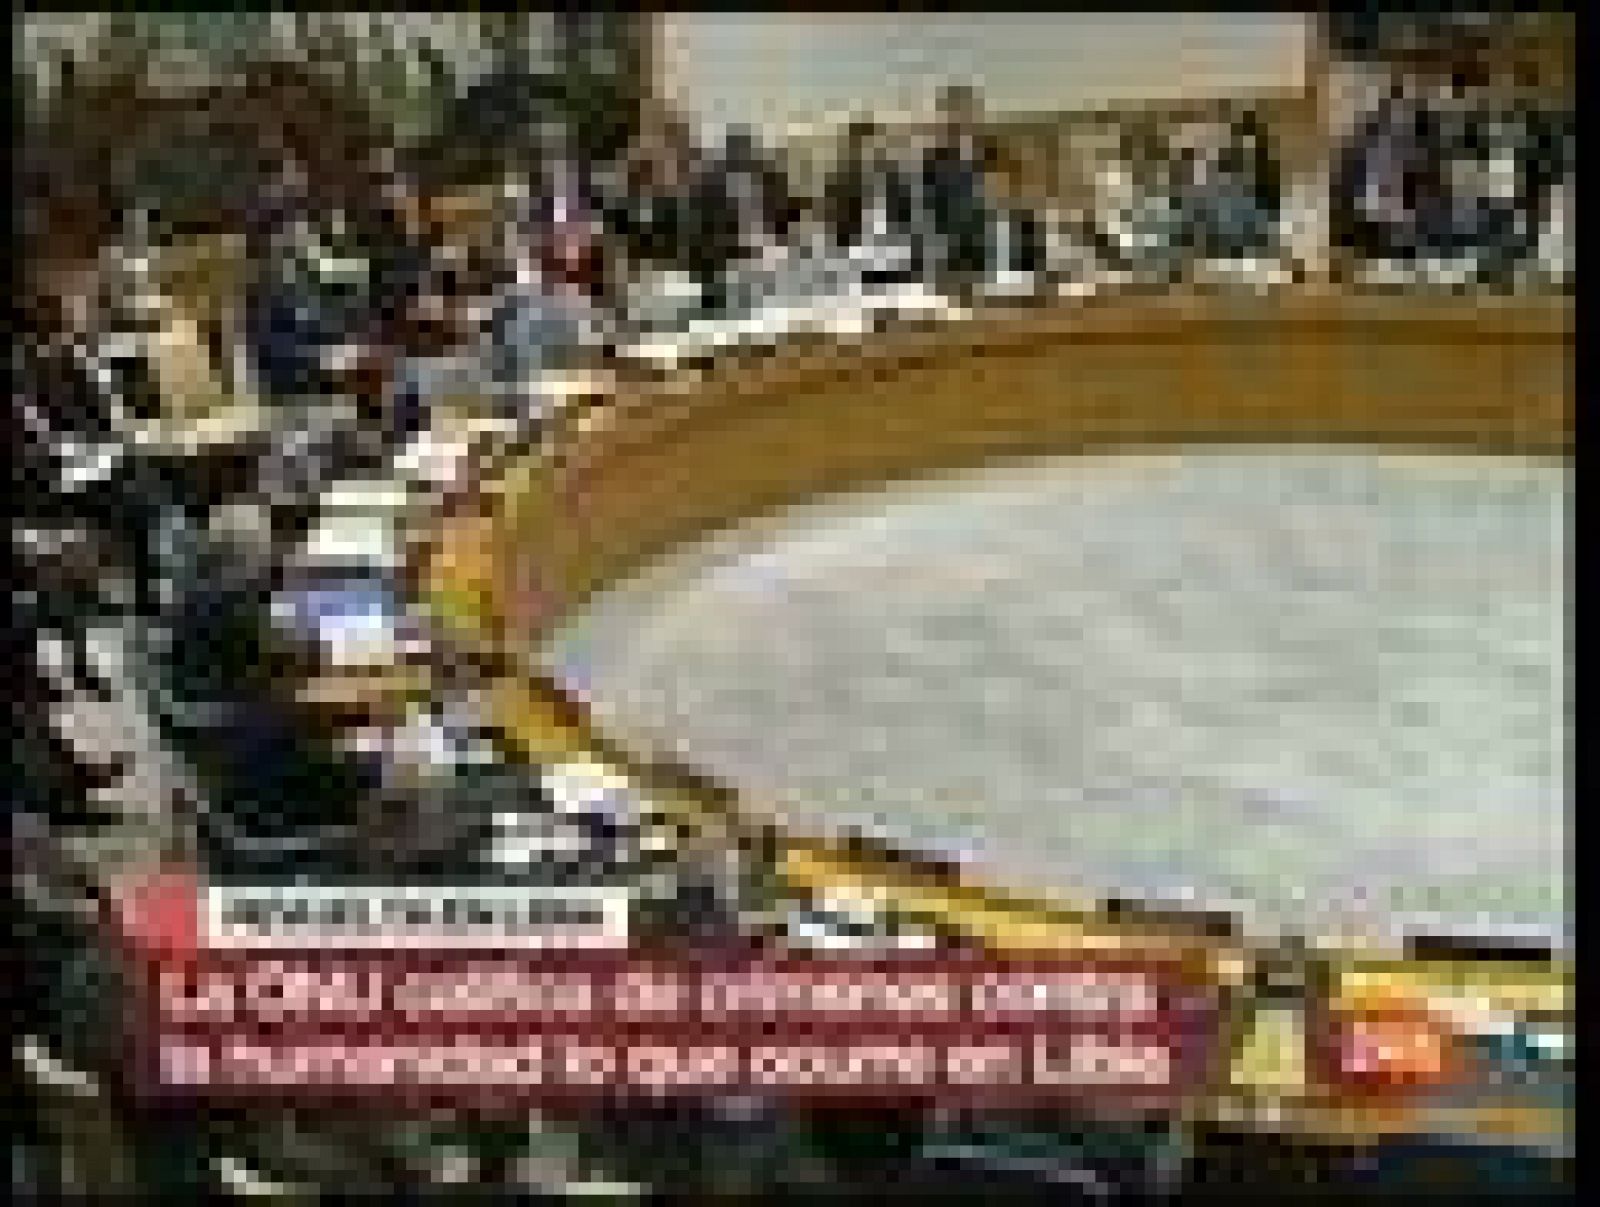 La ONU propone considerar los actos violentos de Libia crímenes de lesa humanidad